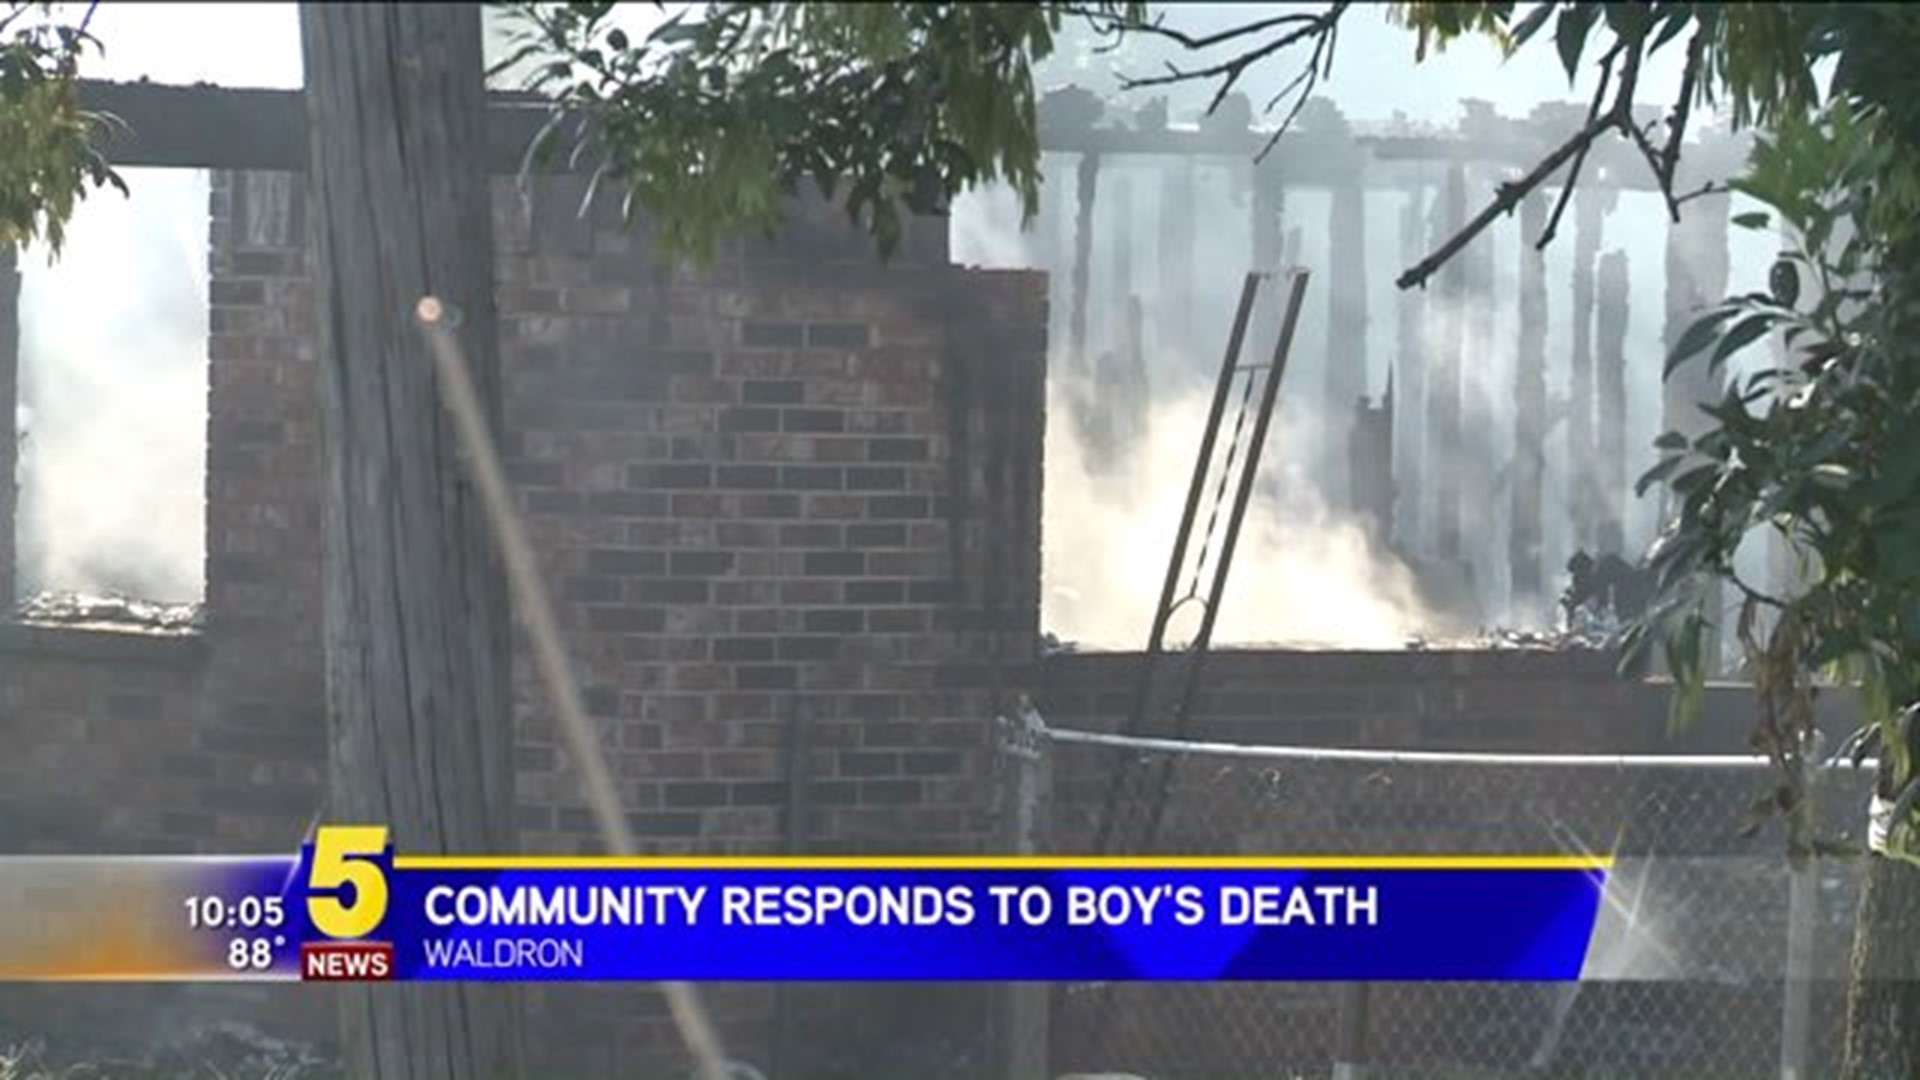 BOY DIES IN FIRE-WALDRON